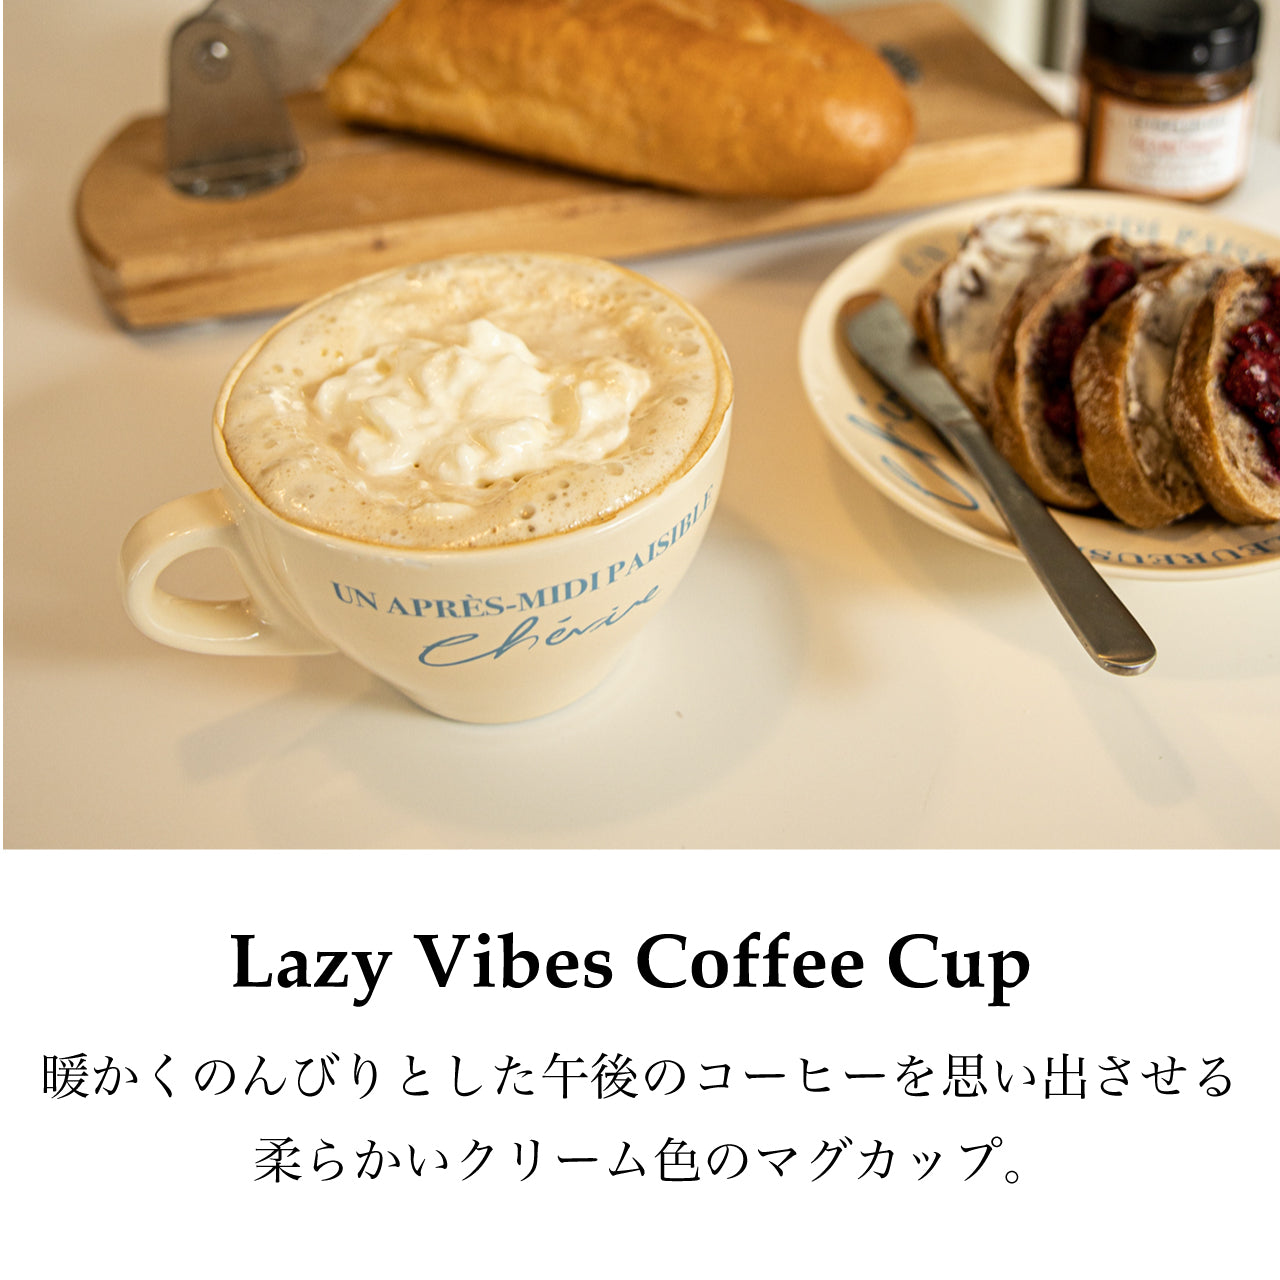 【HOTEL PARIS CHILL】Lazy Vibes Coffee Cup マグカップ HPC-1011 ホテルパリチル